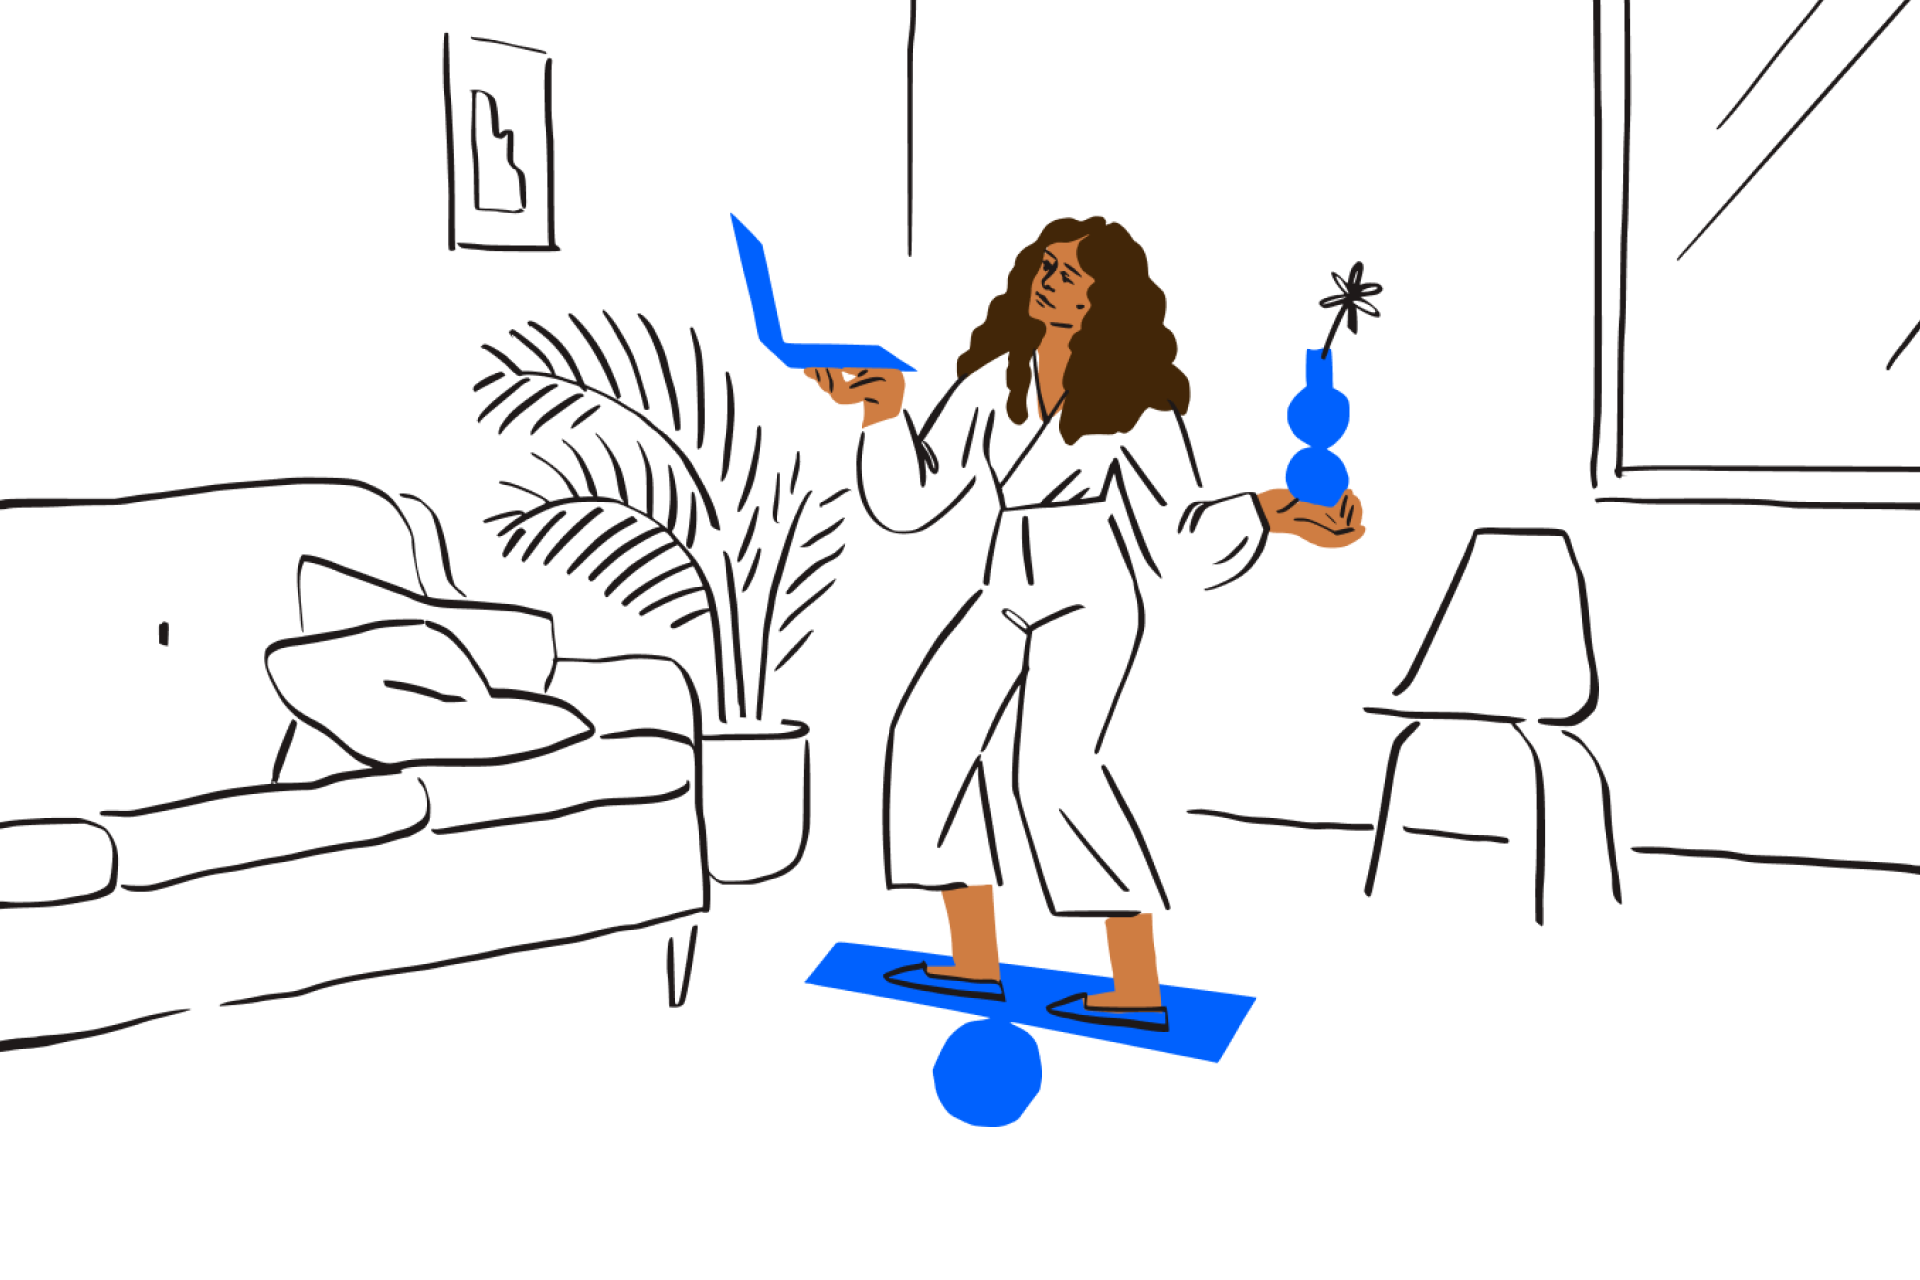 Иллюстрация, на которой изображена женщина, справляющаяся с несколькими задачами одновременно; иллюстрация символизирует повседневную жизнь всех предпринимателей, независимо от статуса